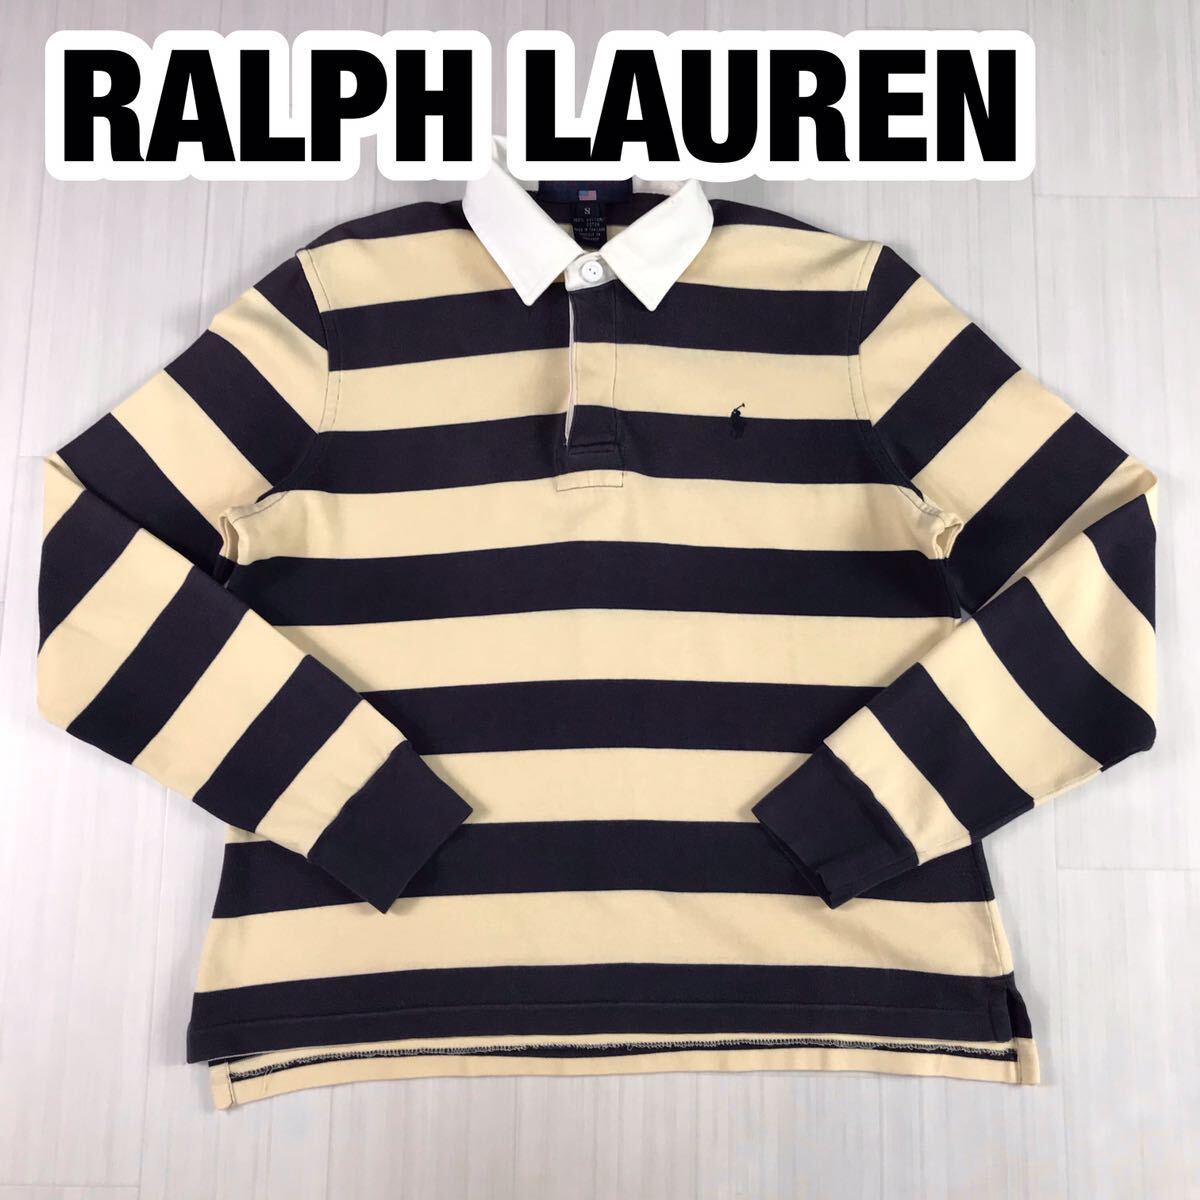 RALPH LAUREN POLO SPORT ラルフローレン ポロスポーツ ラガーシャツ S 太ボーダー ライトイエロー×ネイビー 刺繍ポニー 長袖ポロシャツの画像1